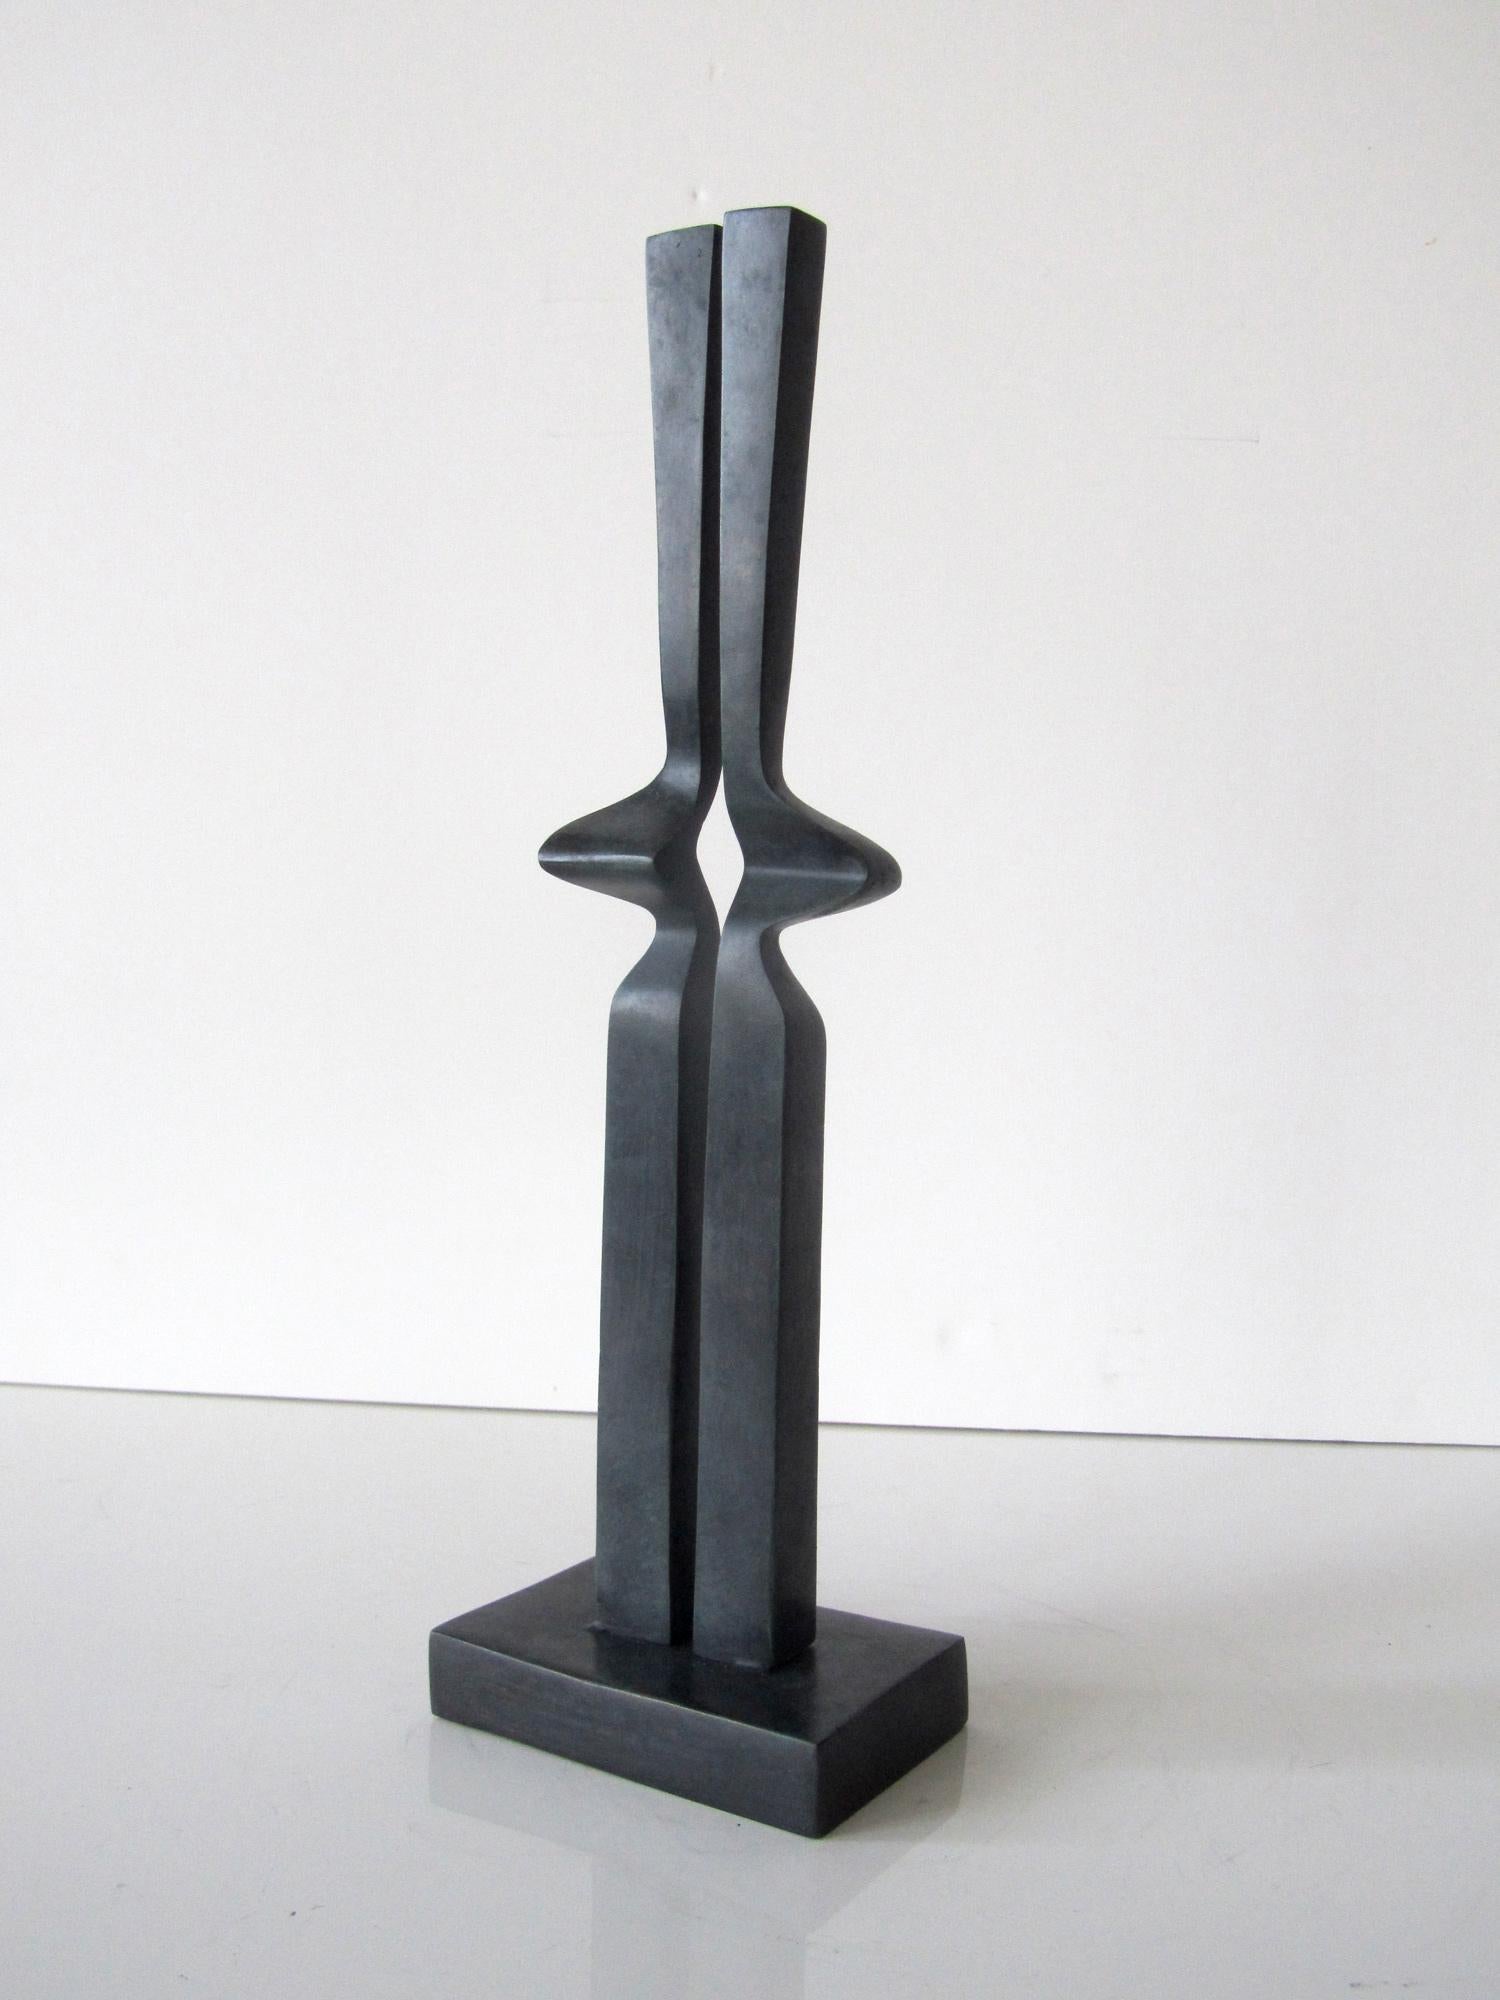 Abstract Sculpture Hans Van de Bovenkamp - Petite sculpture en bronze Itzamna Stella 